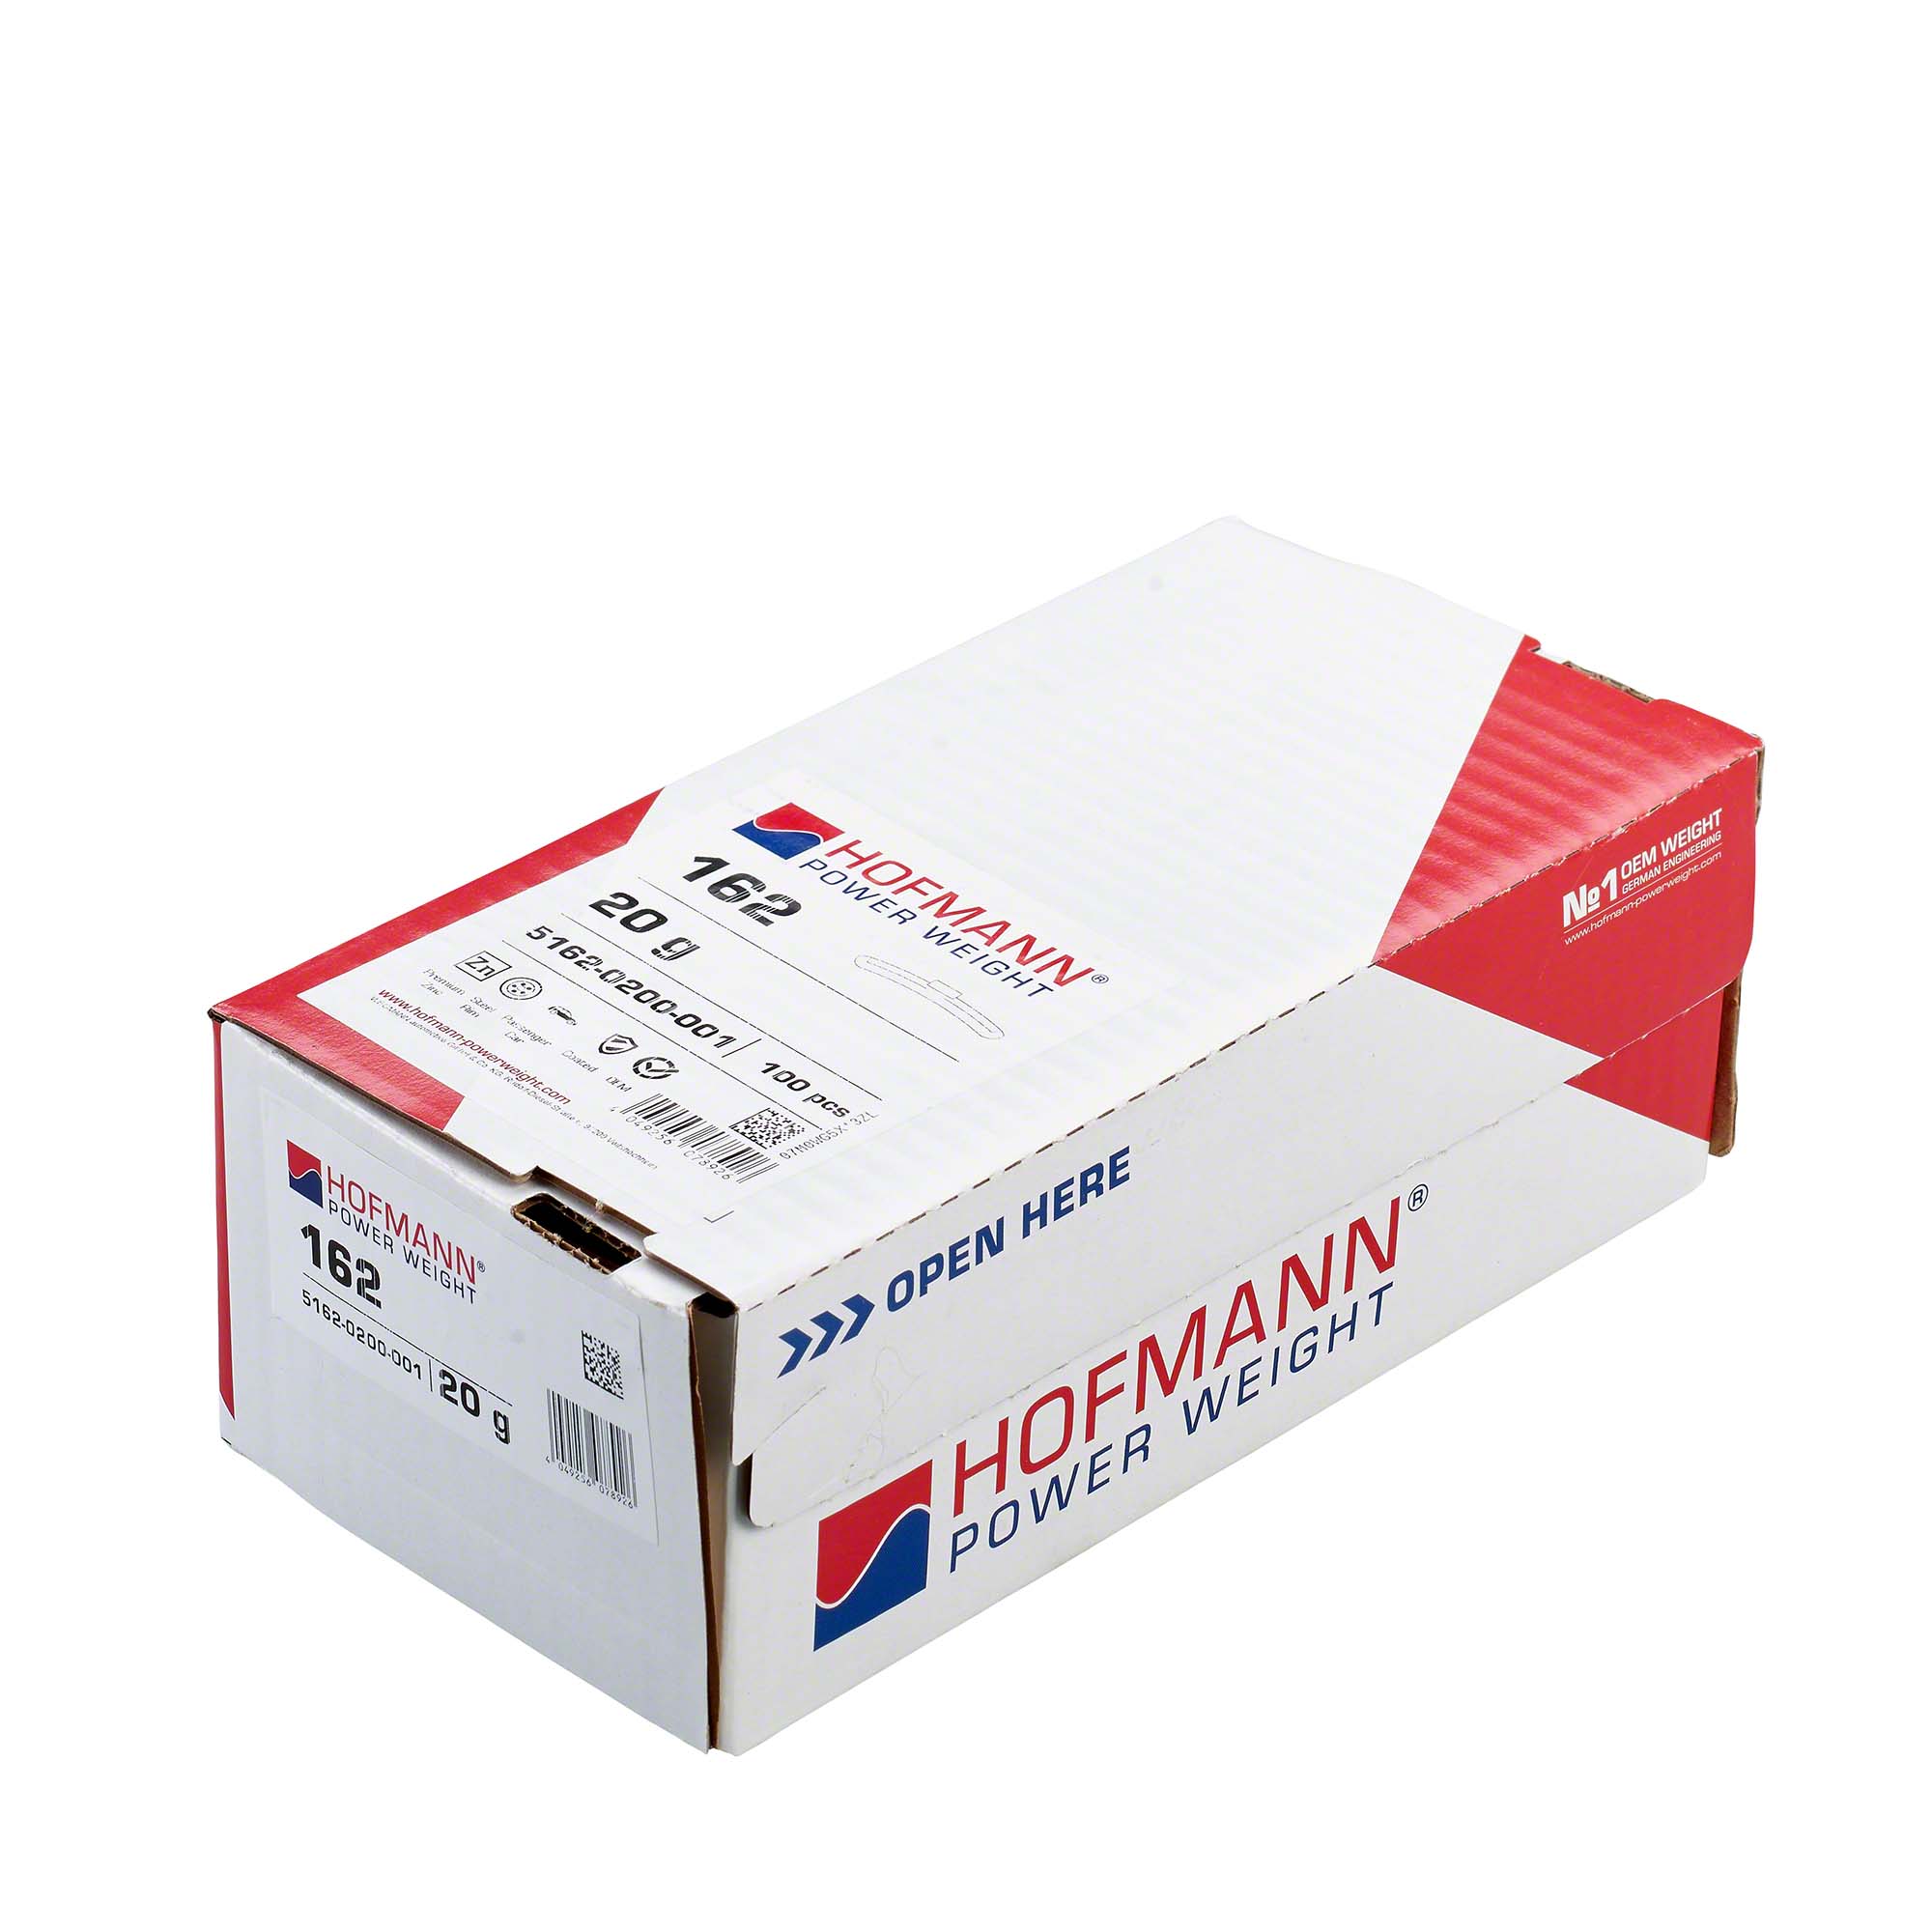 HOFMANN POWER WEIGHT-Schlaggewicht - Typ 162, 20 g, Zink, Silber-5162-0200-001